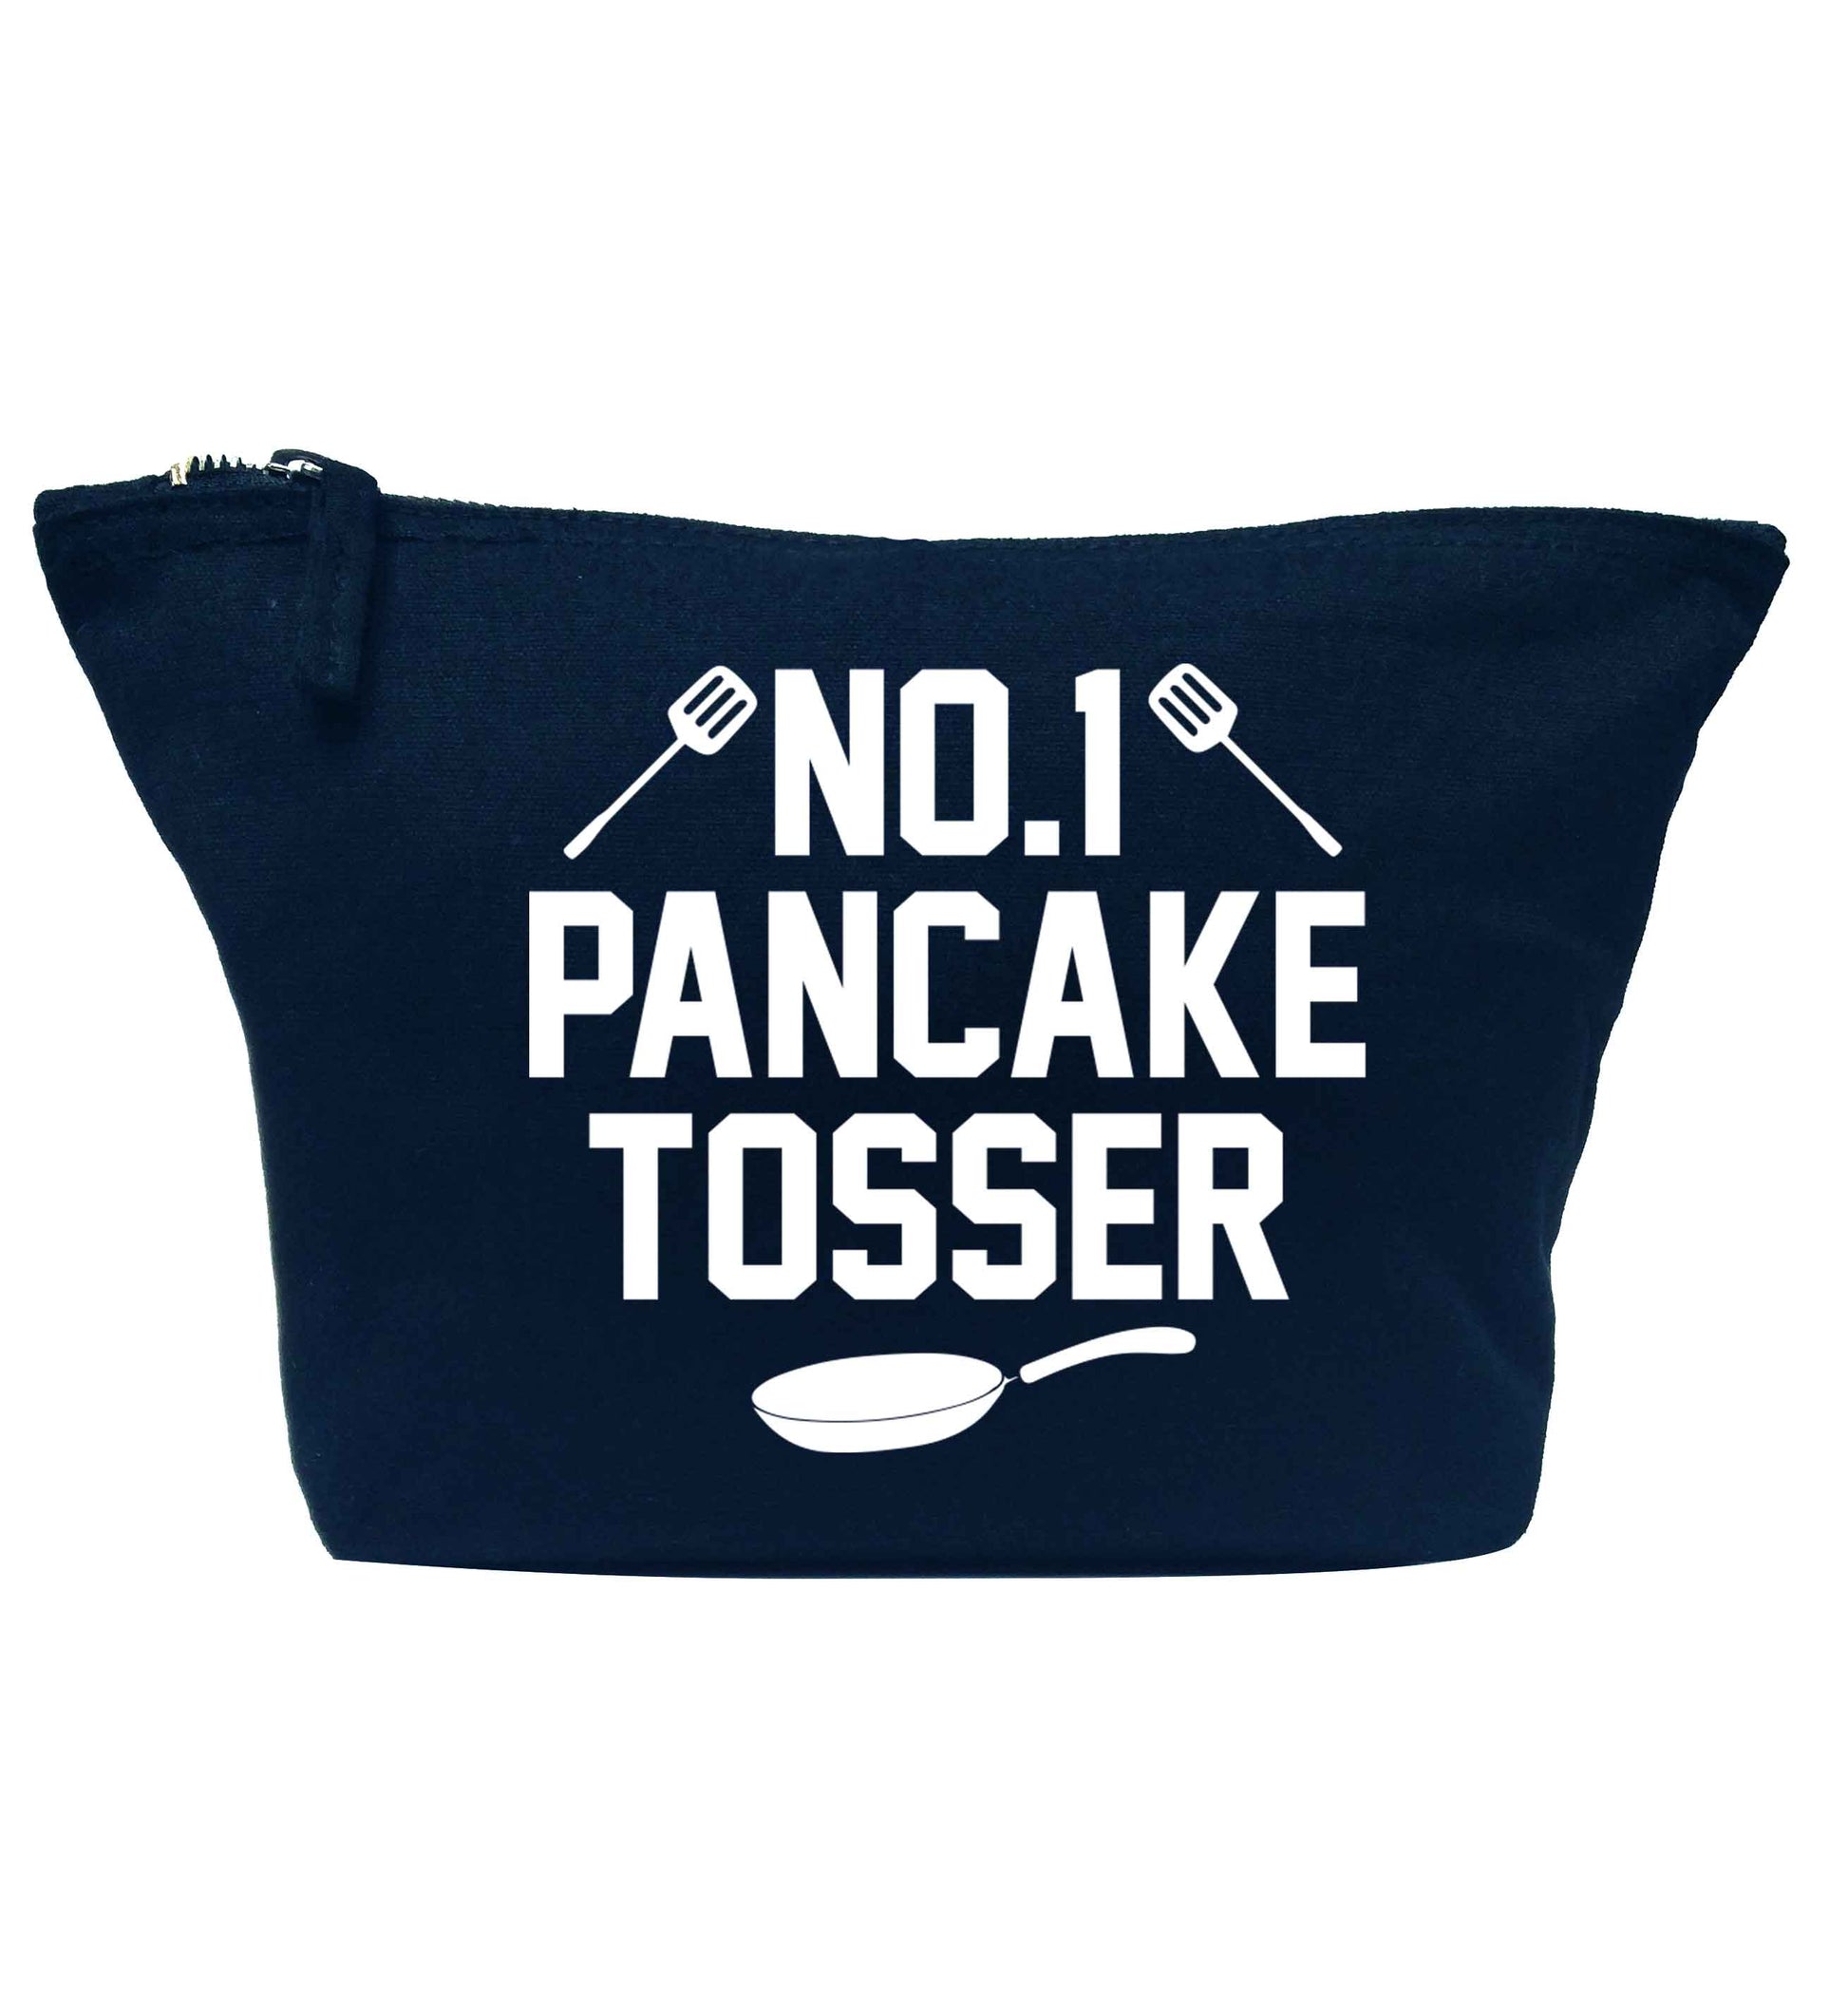 No.1 Pancake tosser navy makeup bag